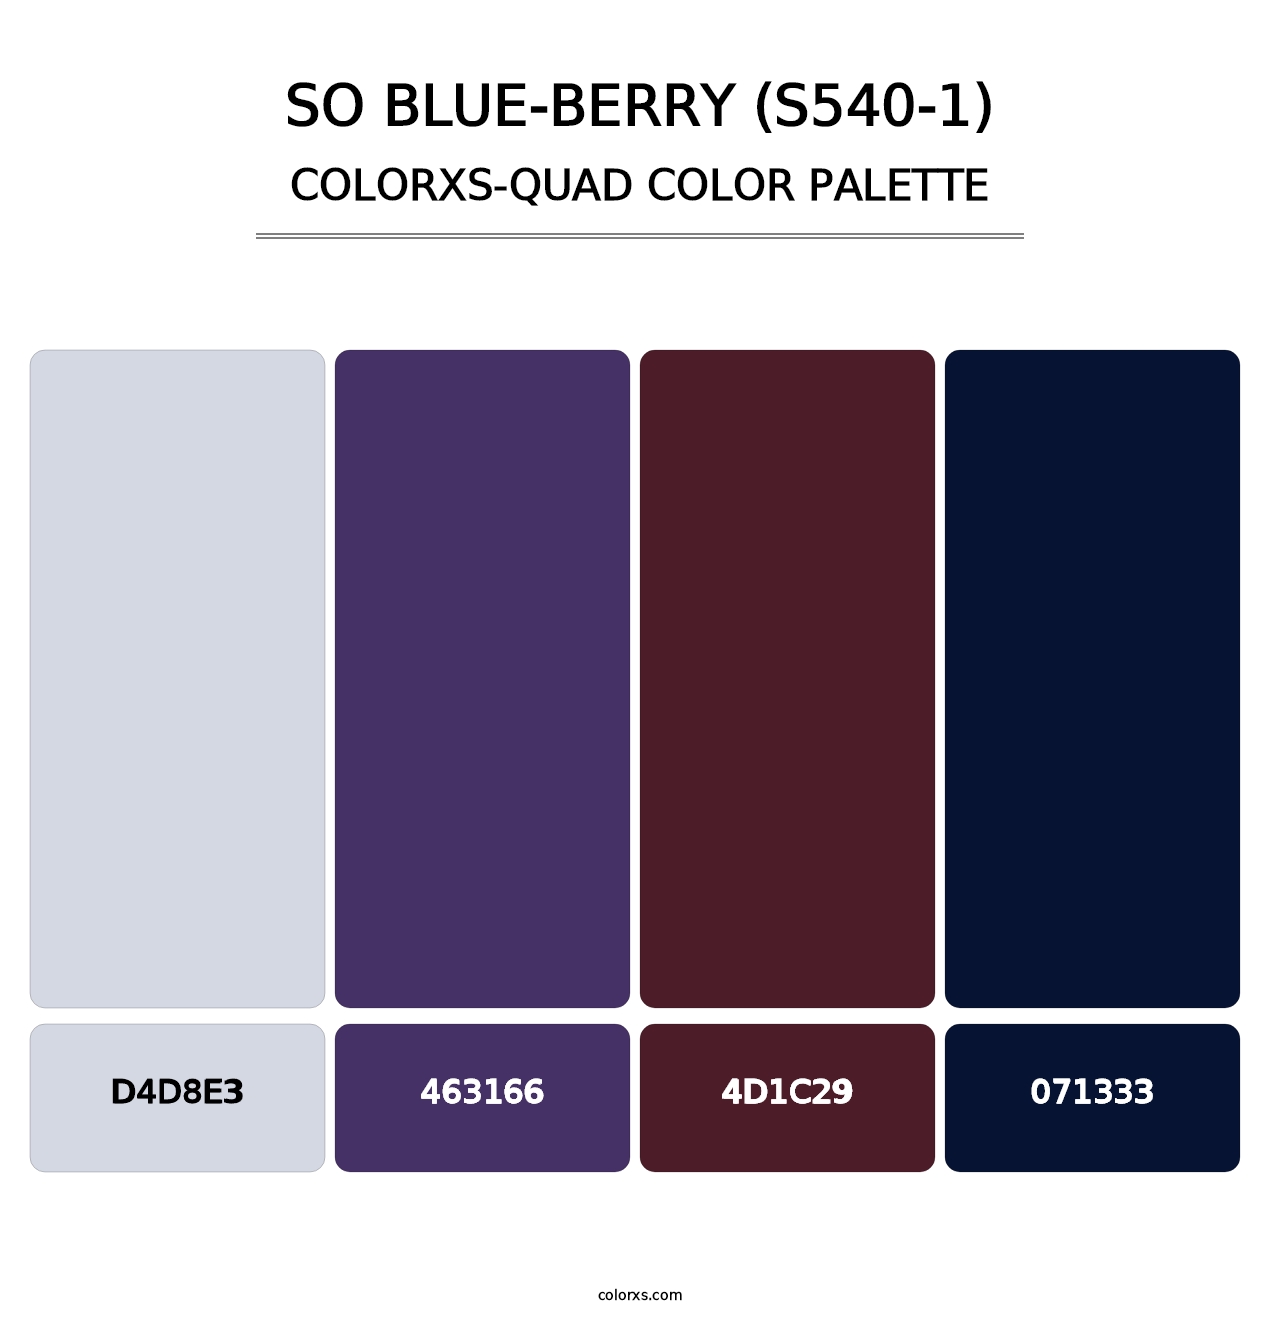 So Blue-Berry (S540-1) - Colorxs Quad Palette